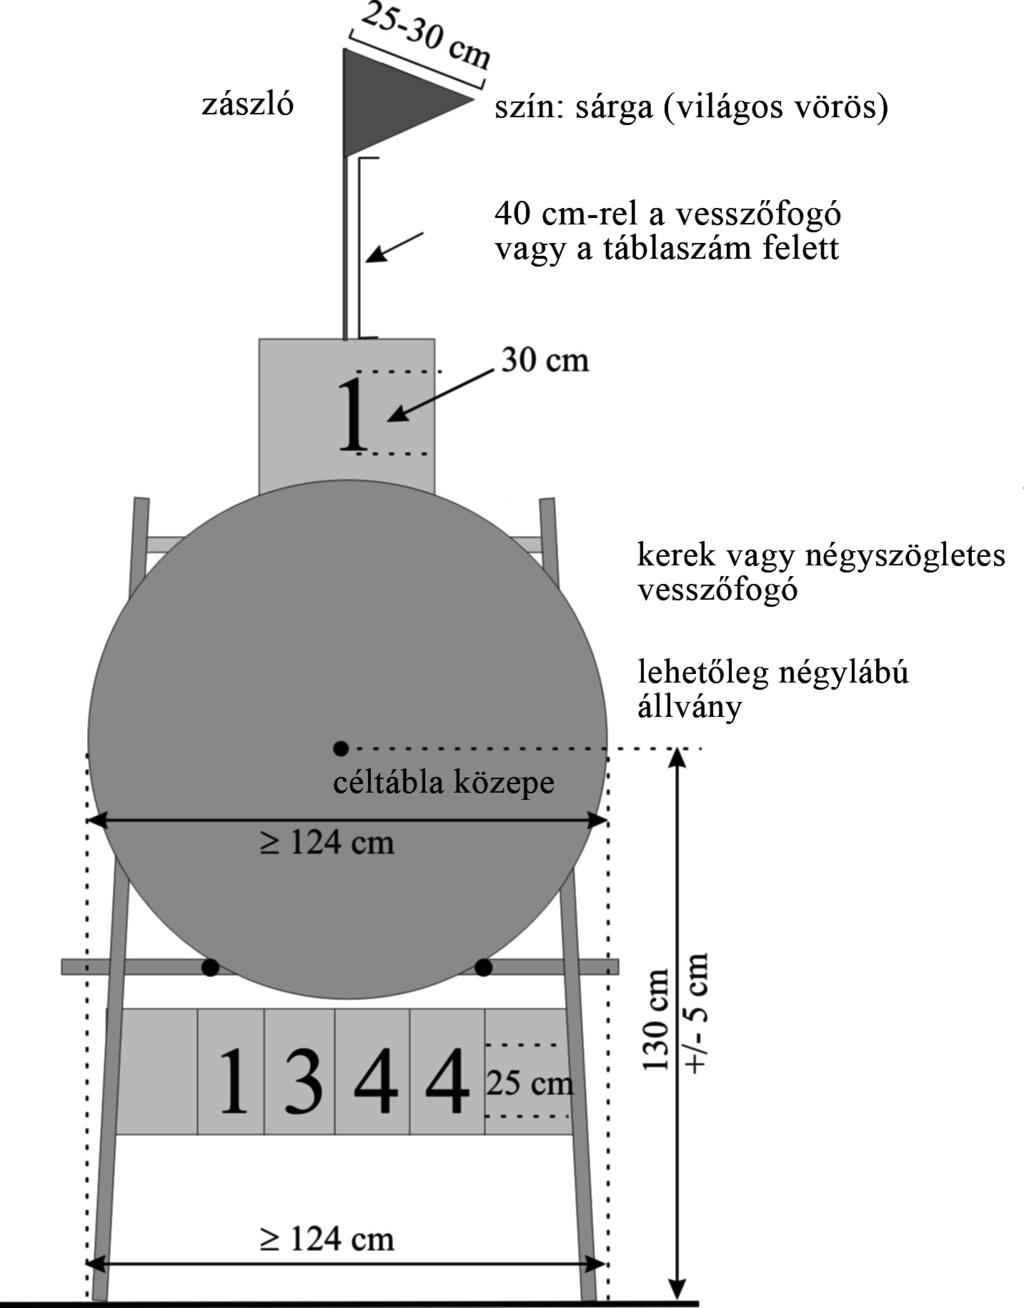 Image 4: Szabadtéri vesszőfogó 4 x 5-10 találati zónás lőlap